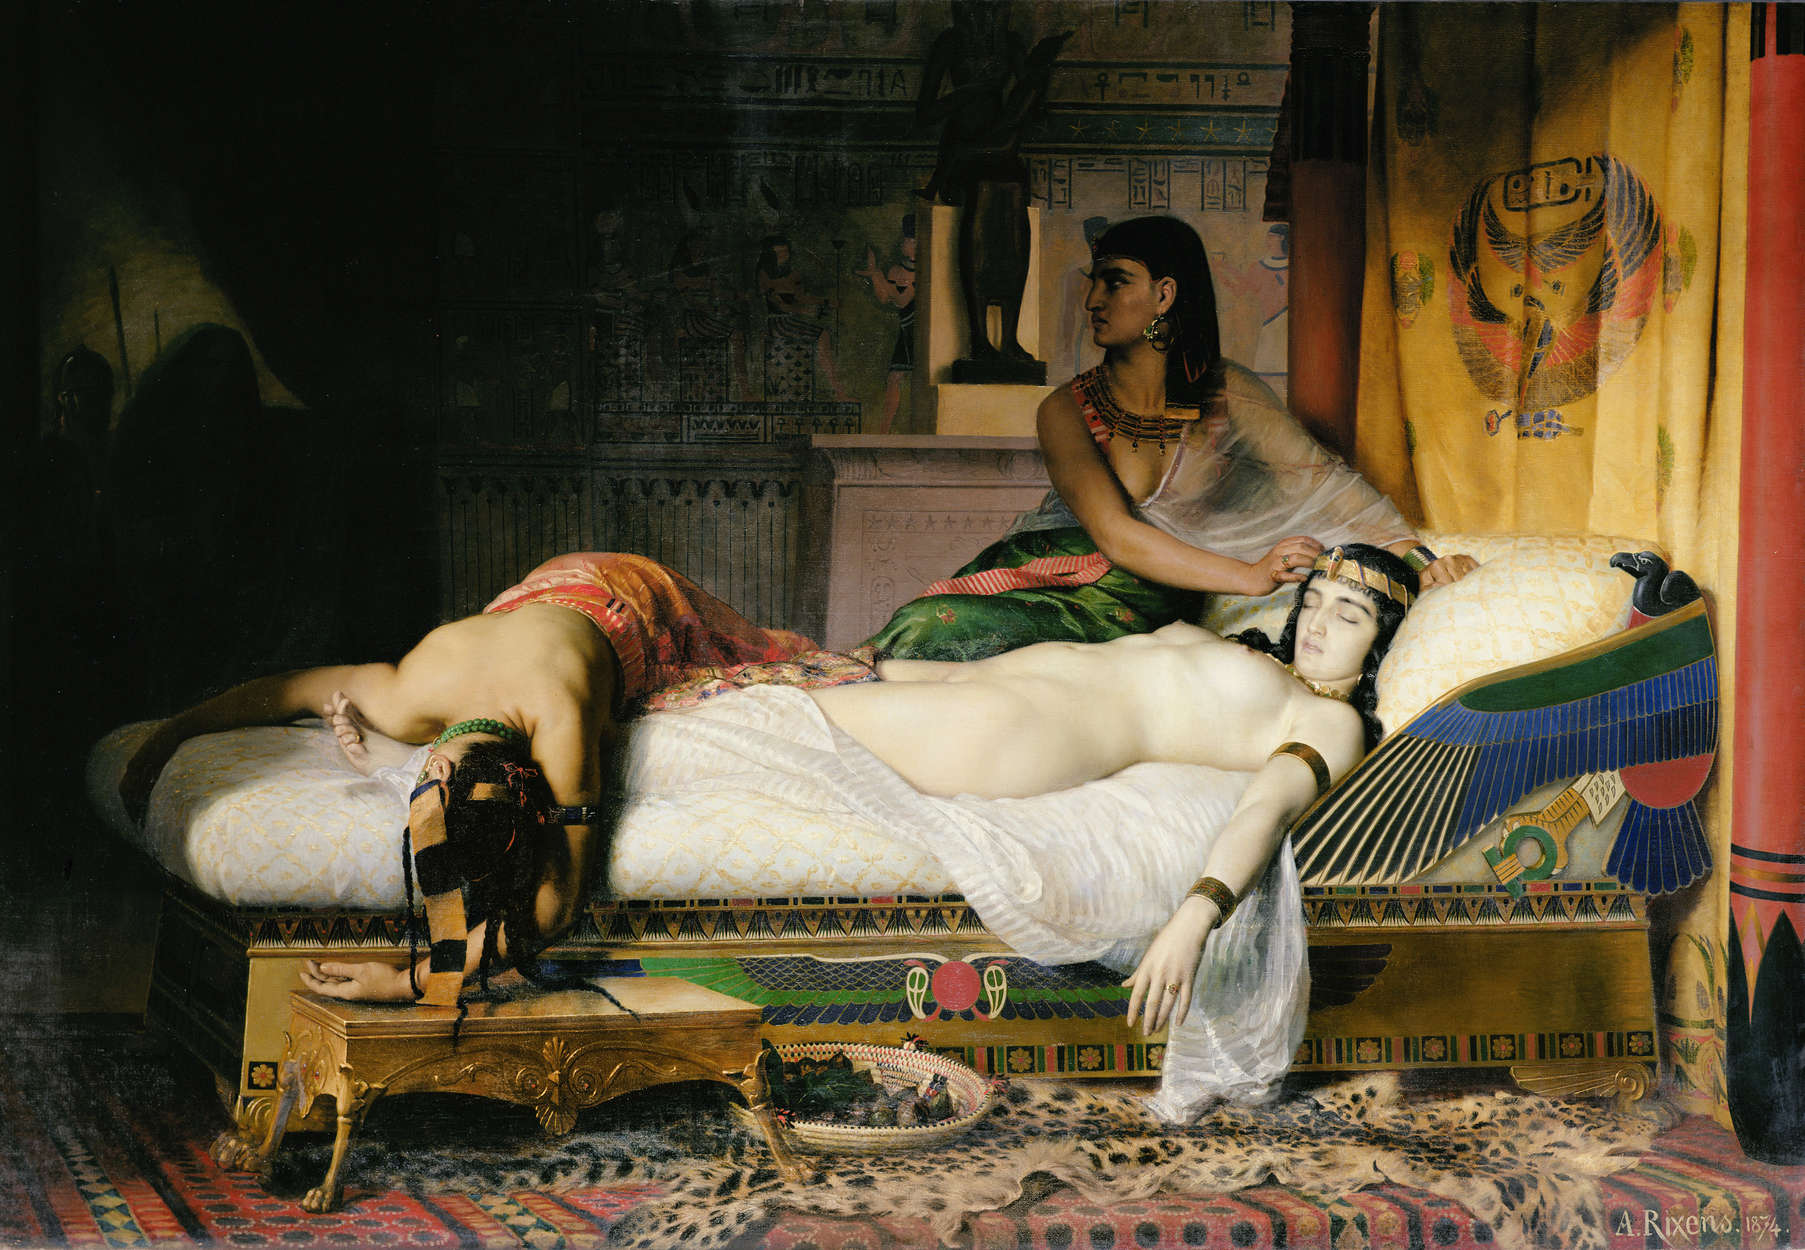             Dood van Cleopatra" muurschildering door August Rixens
        